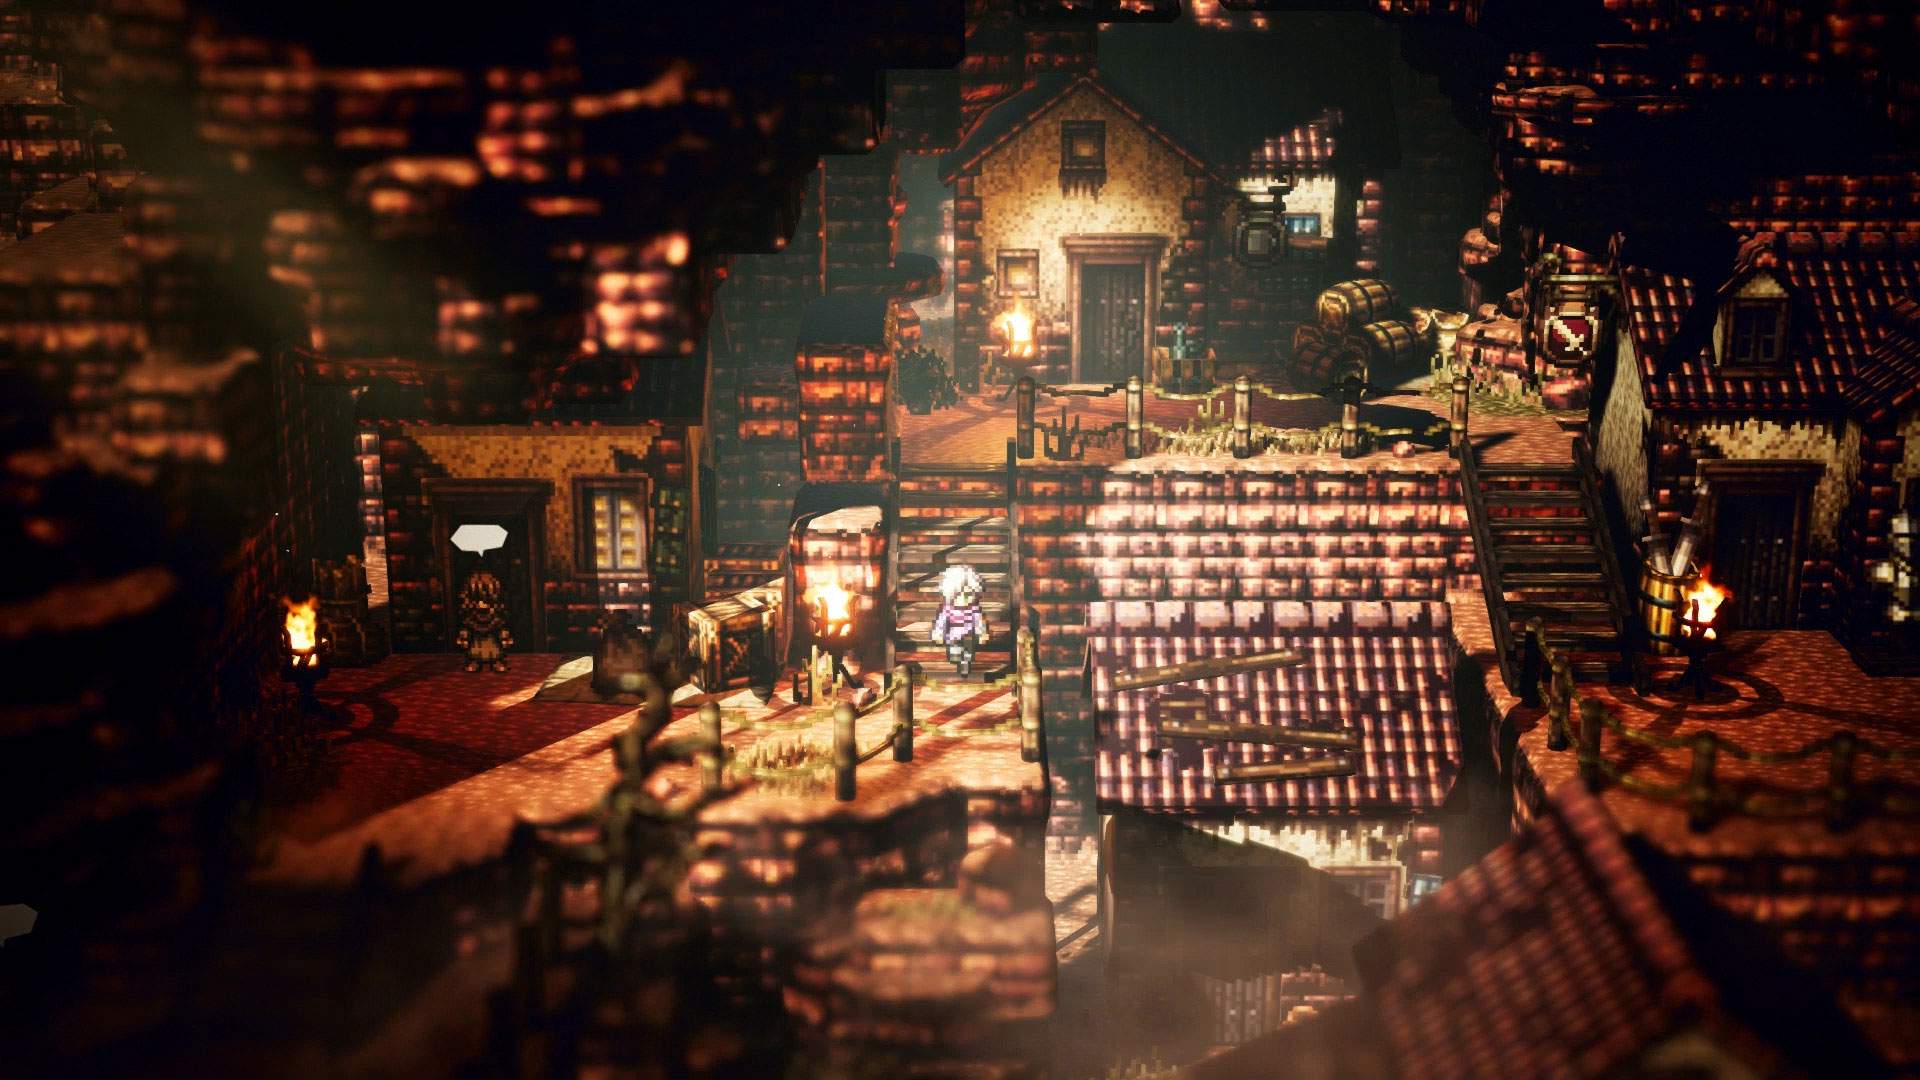 Capture d'écran montrant Thérion descendant des escaliers au milieu d'une ville de style médiéval au crépuscule.